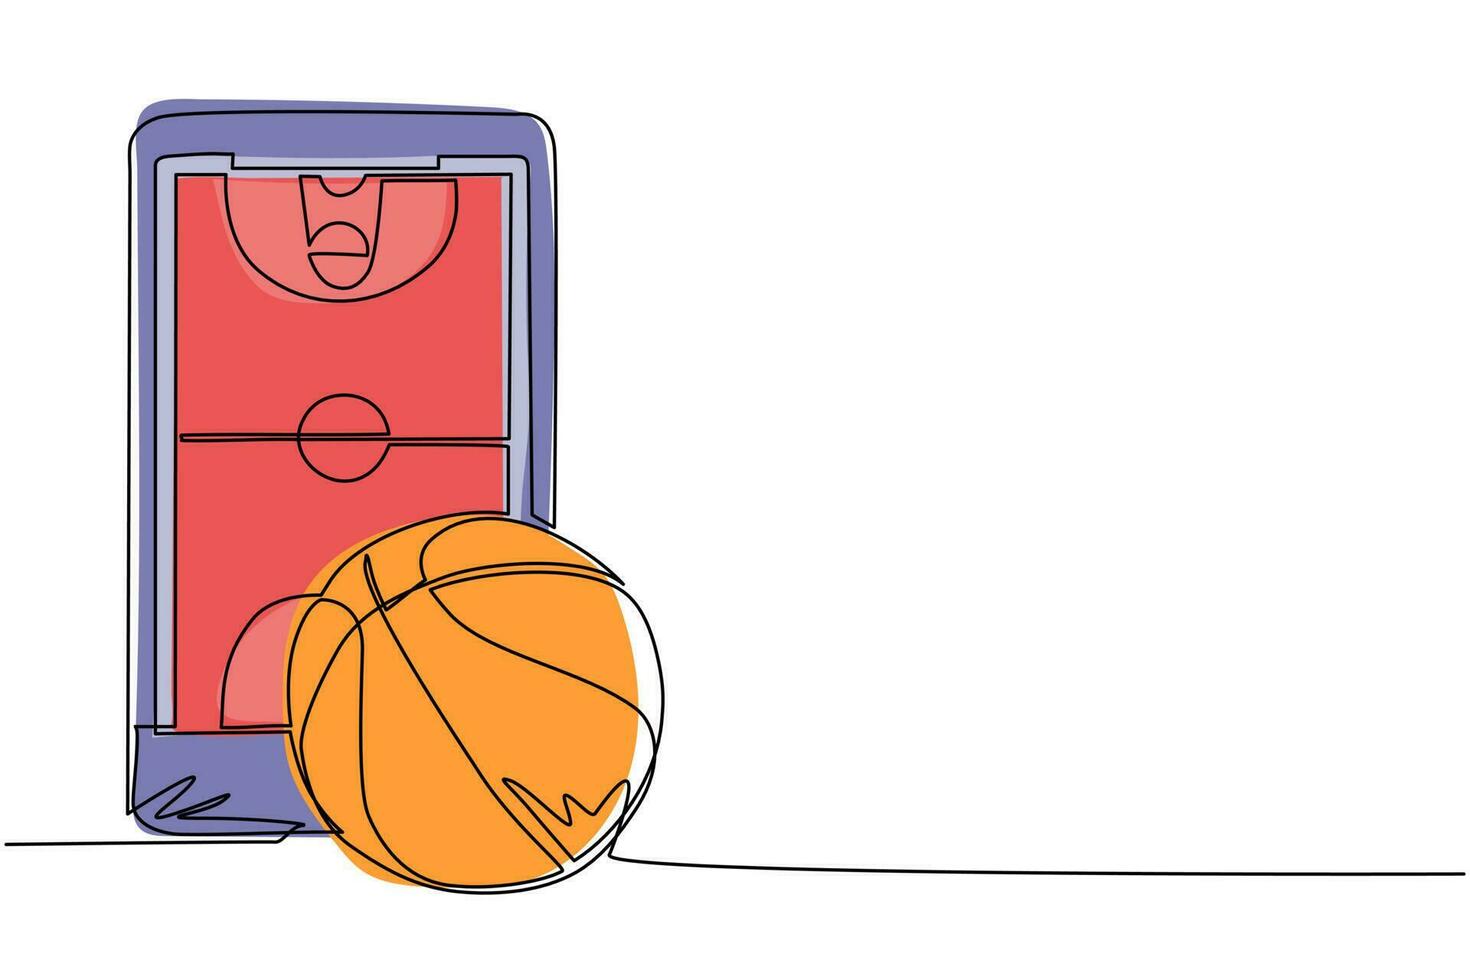 durchgehendes einzeiliges zeichnungs-smartphone mit app-basketballplatz und ball. Online-Basketballspiele. Smartphone-Anwendungen. Mobiler Basketball. einzeiliges zeichnen design vektorgrafik illustration vektor